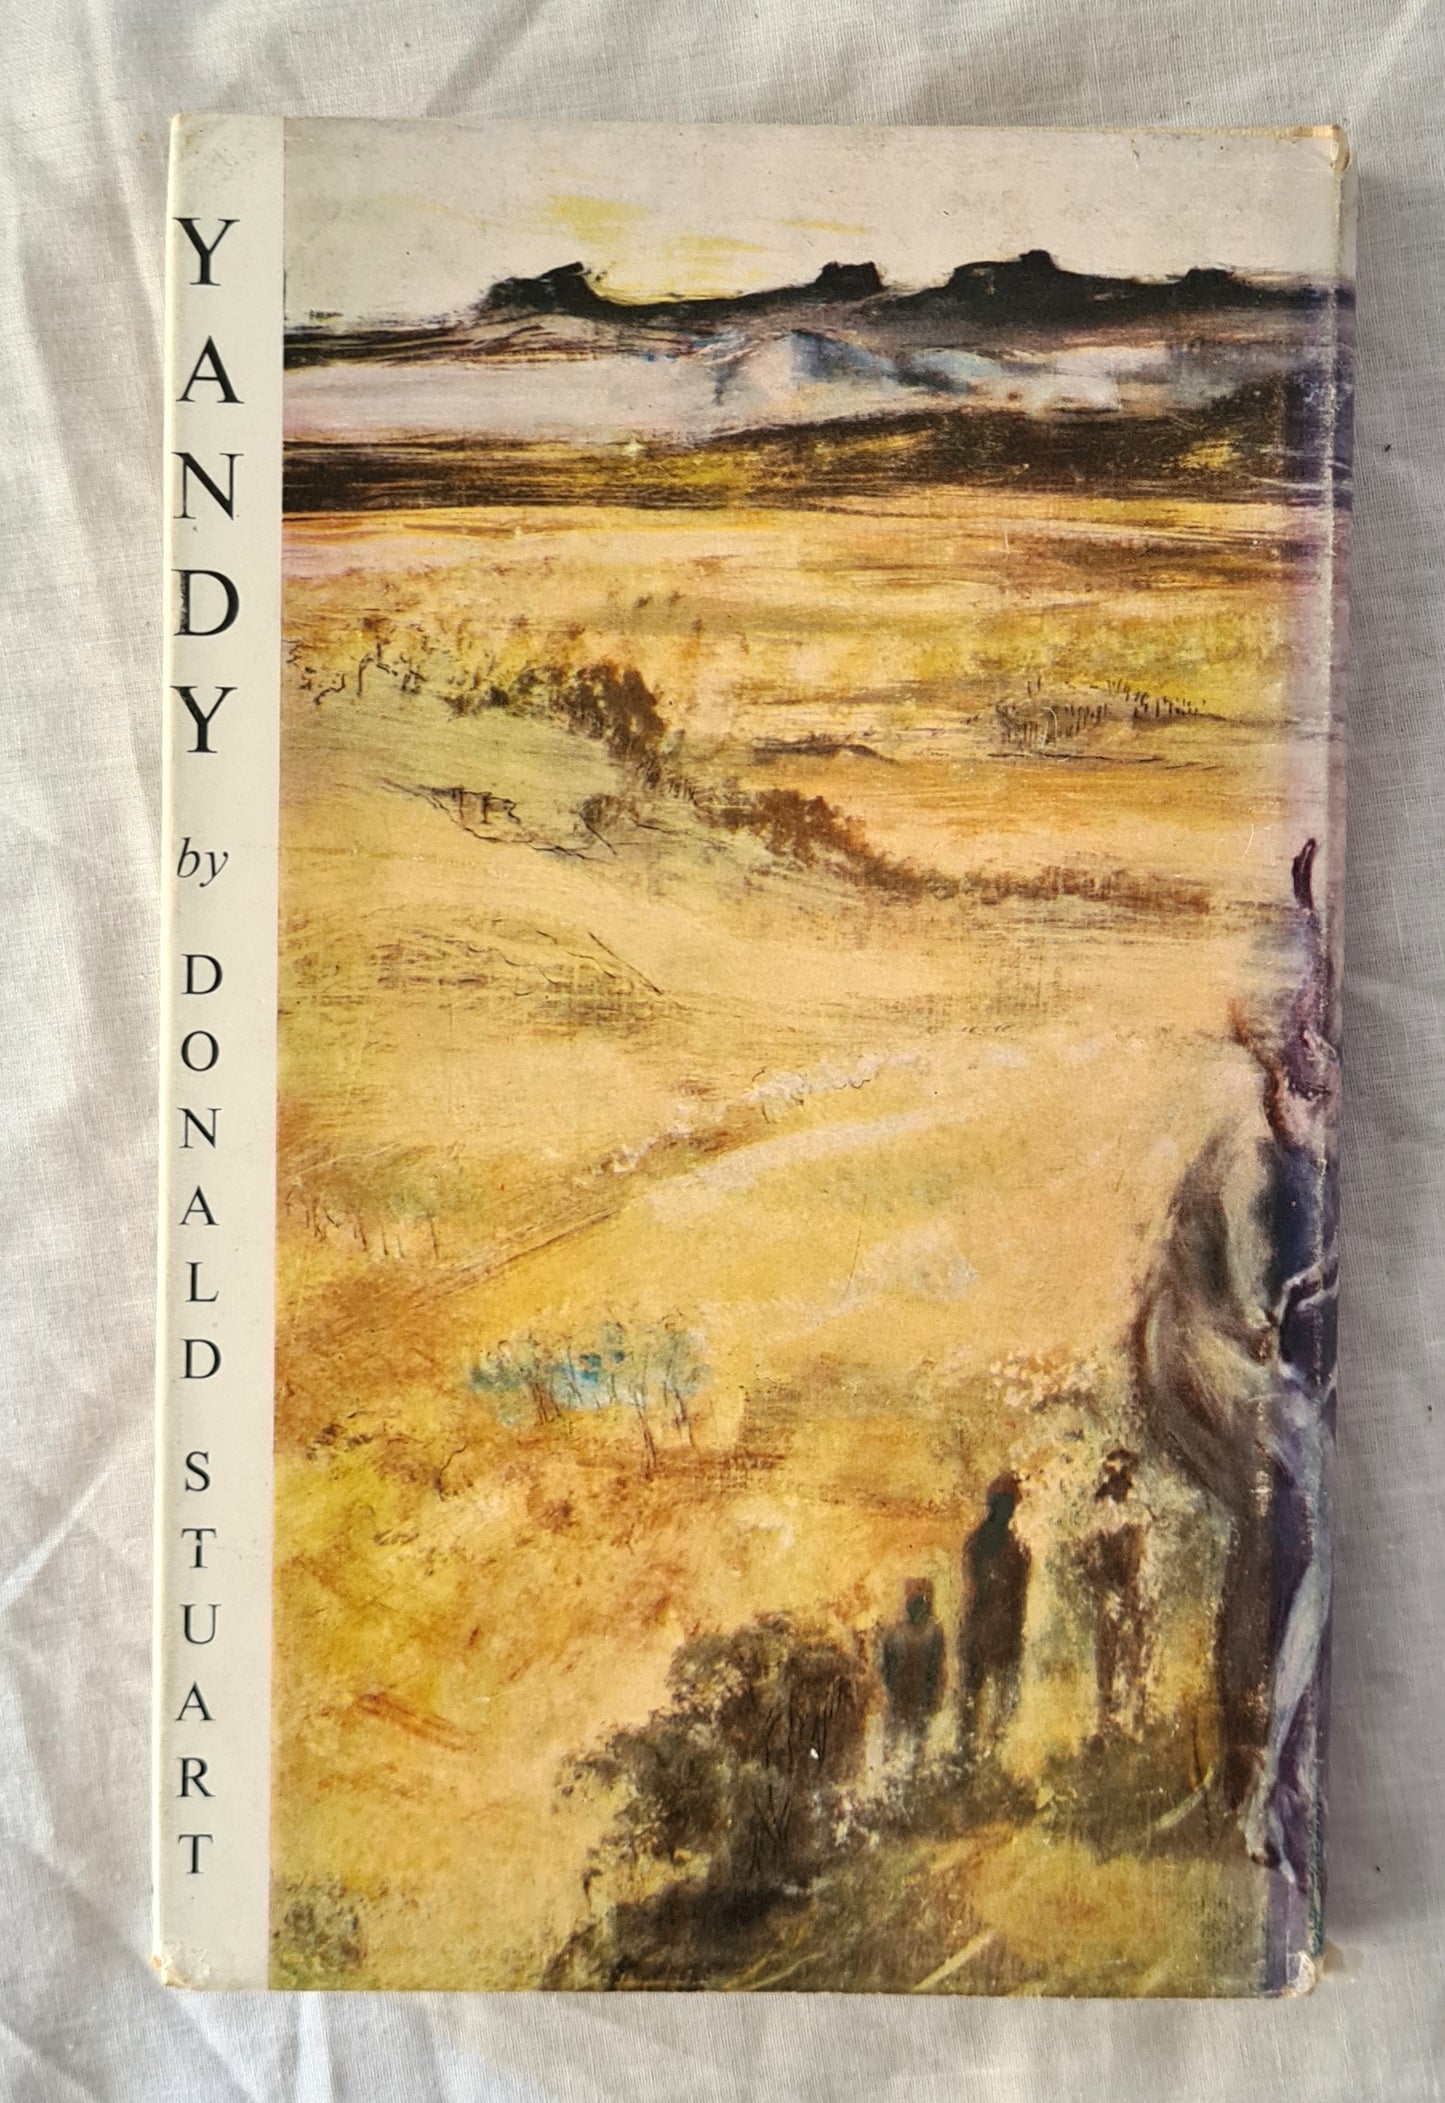 Yandy by Donald Stuart